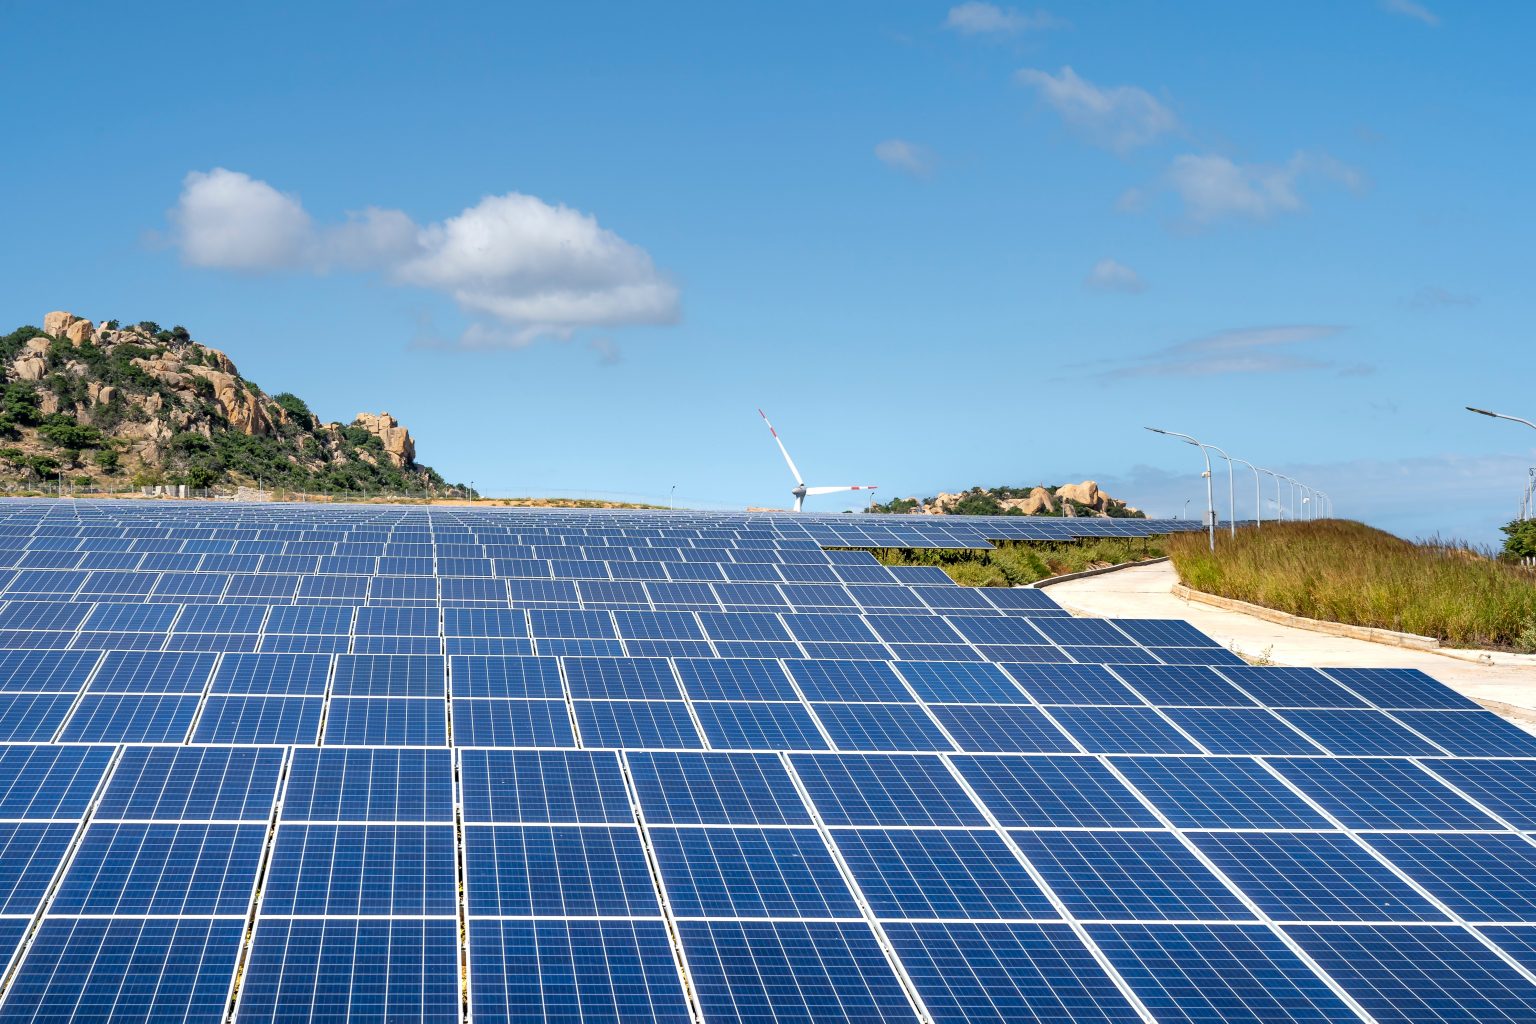 Solarparks - Photovoltaik auf Freiflächen - Hügelbebauung